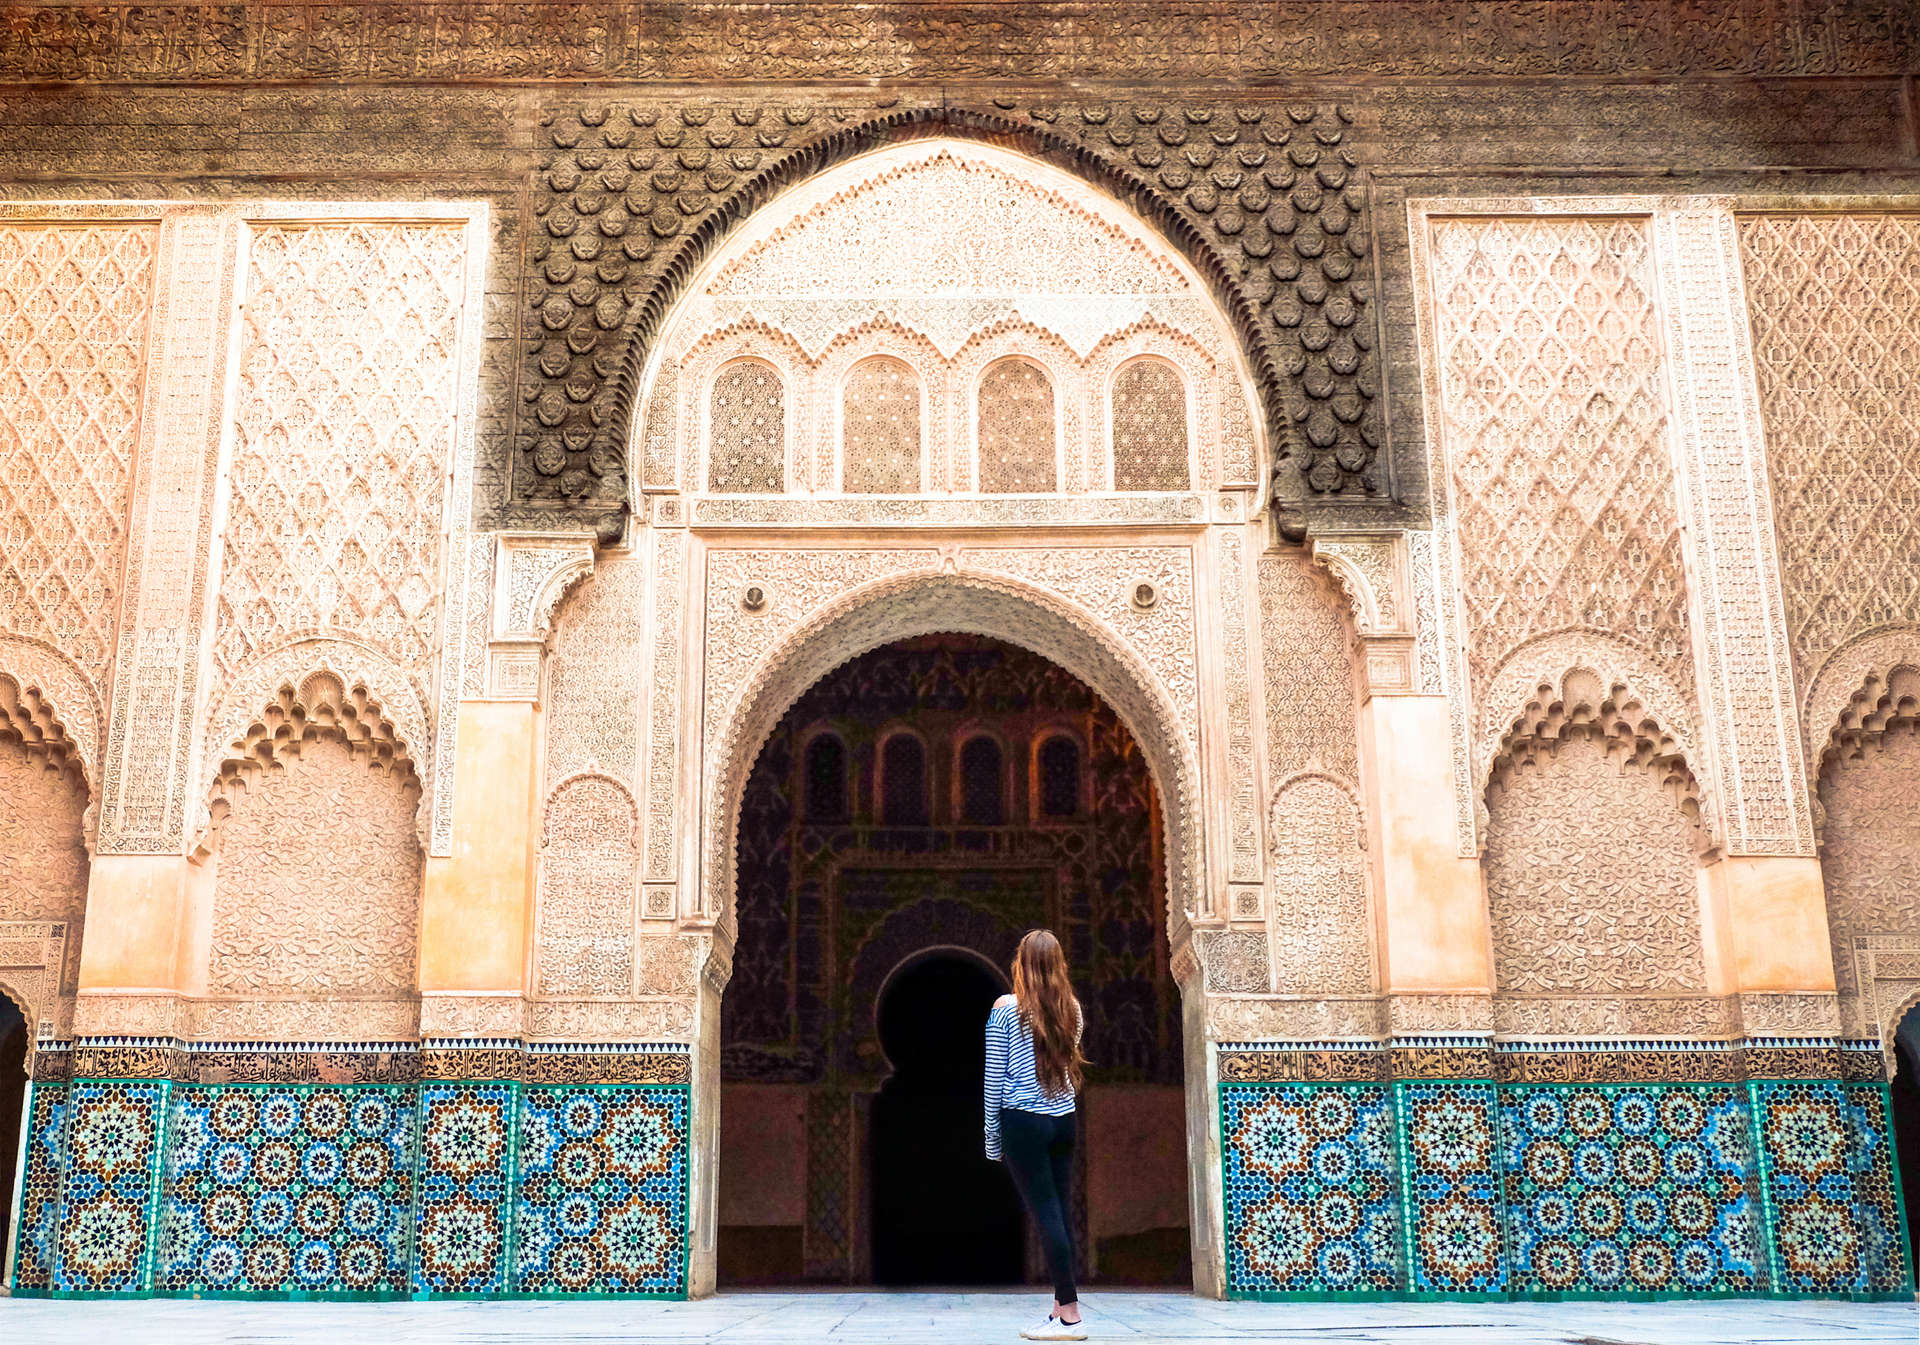 Marrakesch ist ein lebhafter Ort mit quirligen Souks, Cafés und historischen Gebäuden